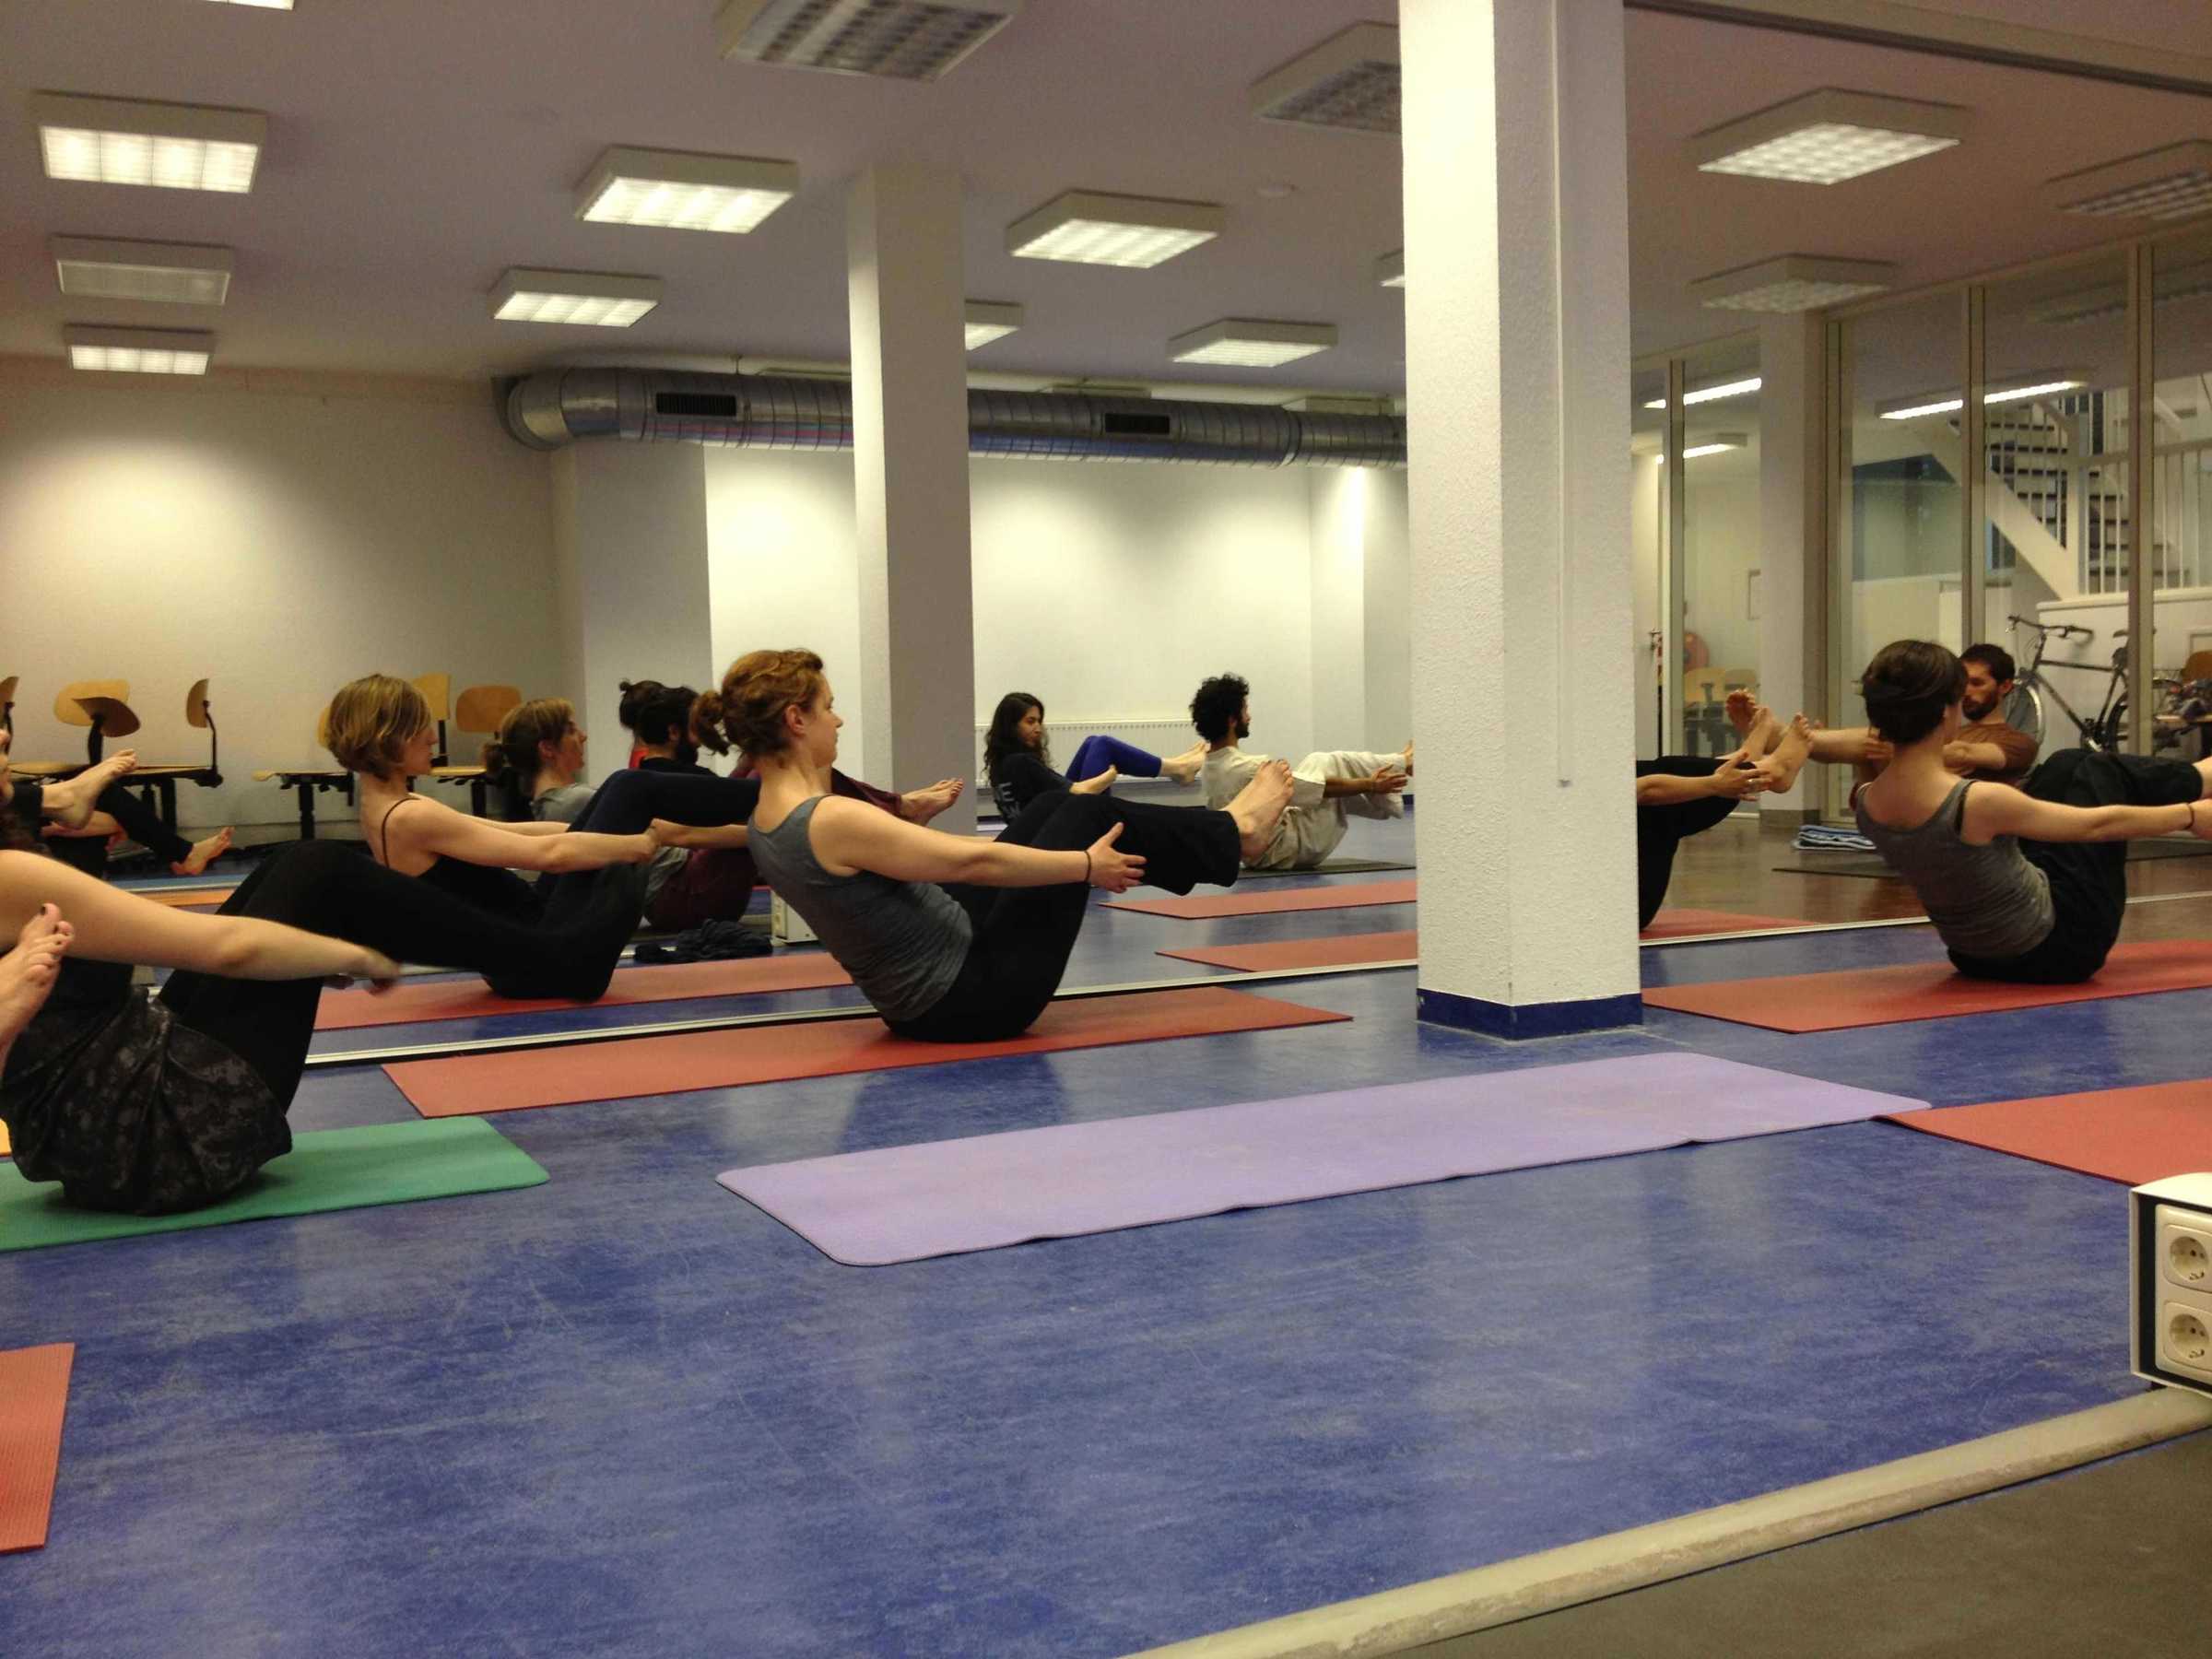 DAI yoga-class. Teacher: Rainier Isendam, Wednesday 26 June 2013